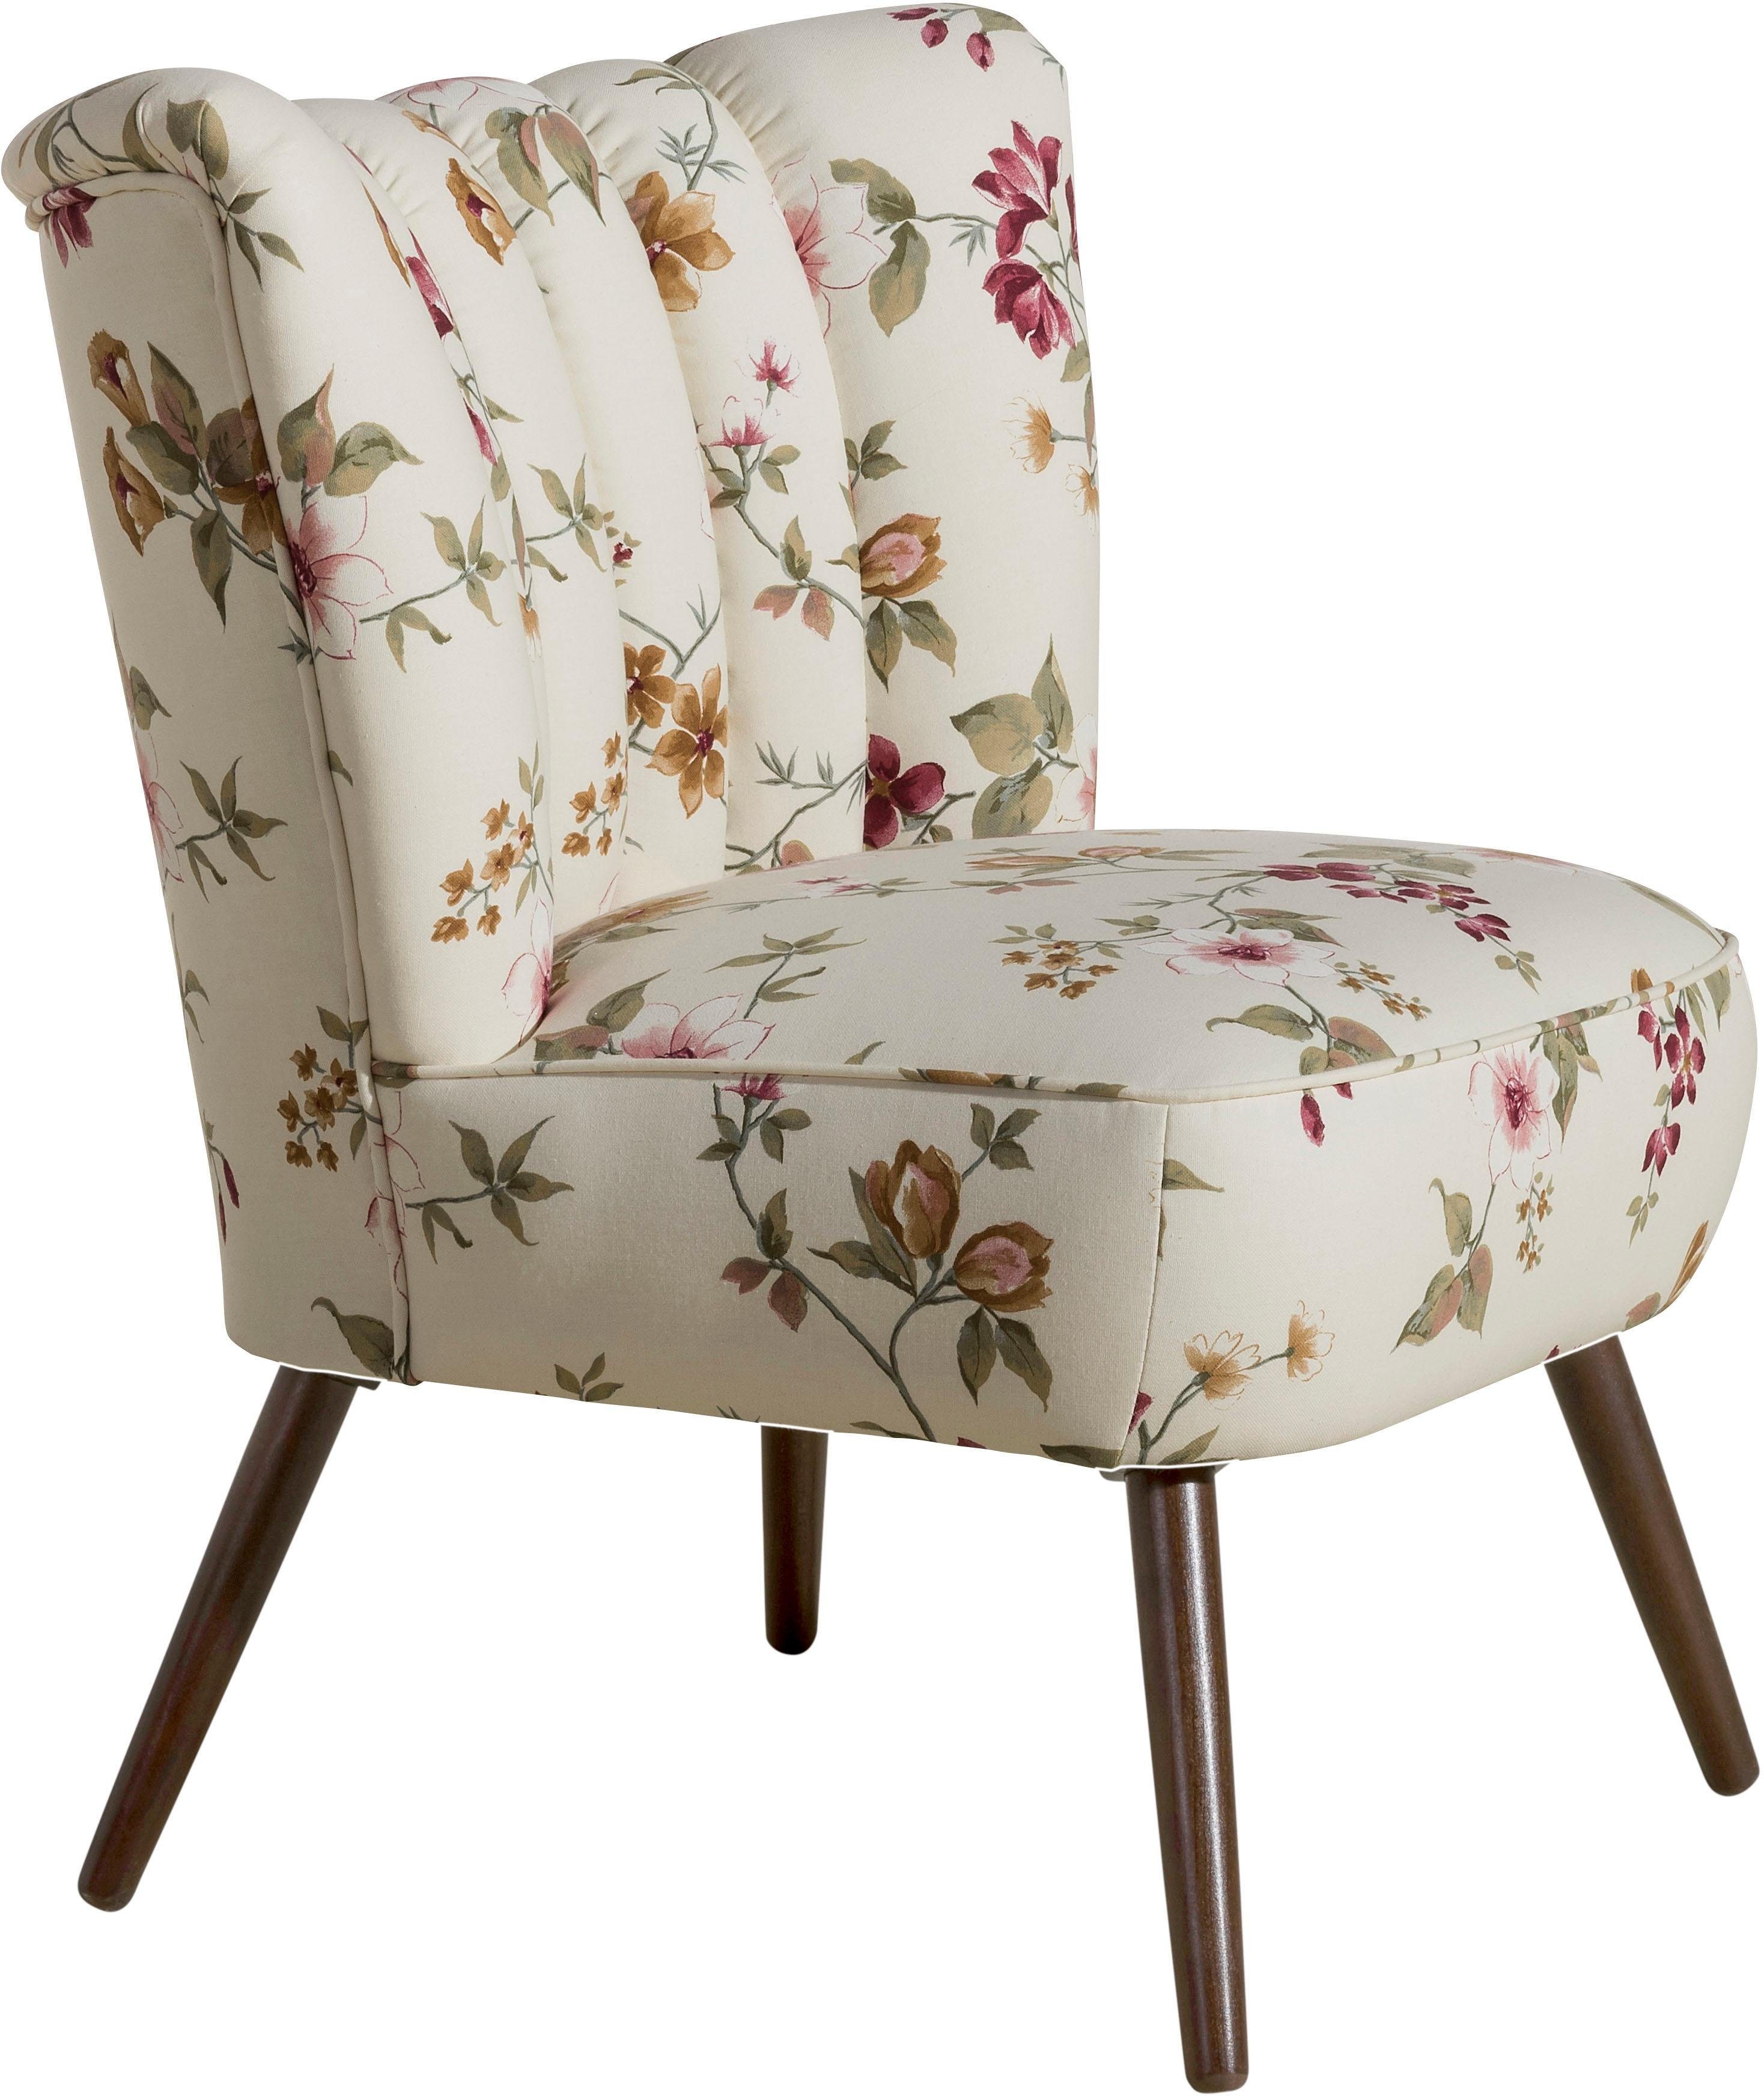 max winzer fauteuil aspen in retro stijl, met bloemmotief wit